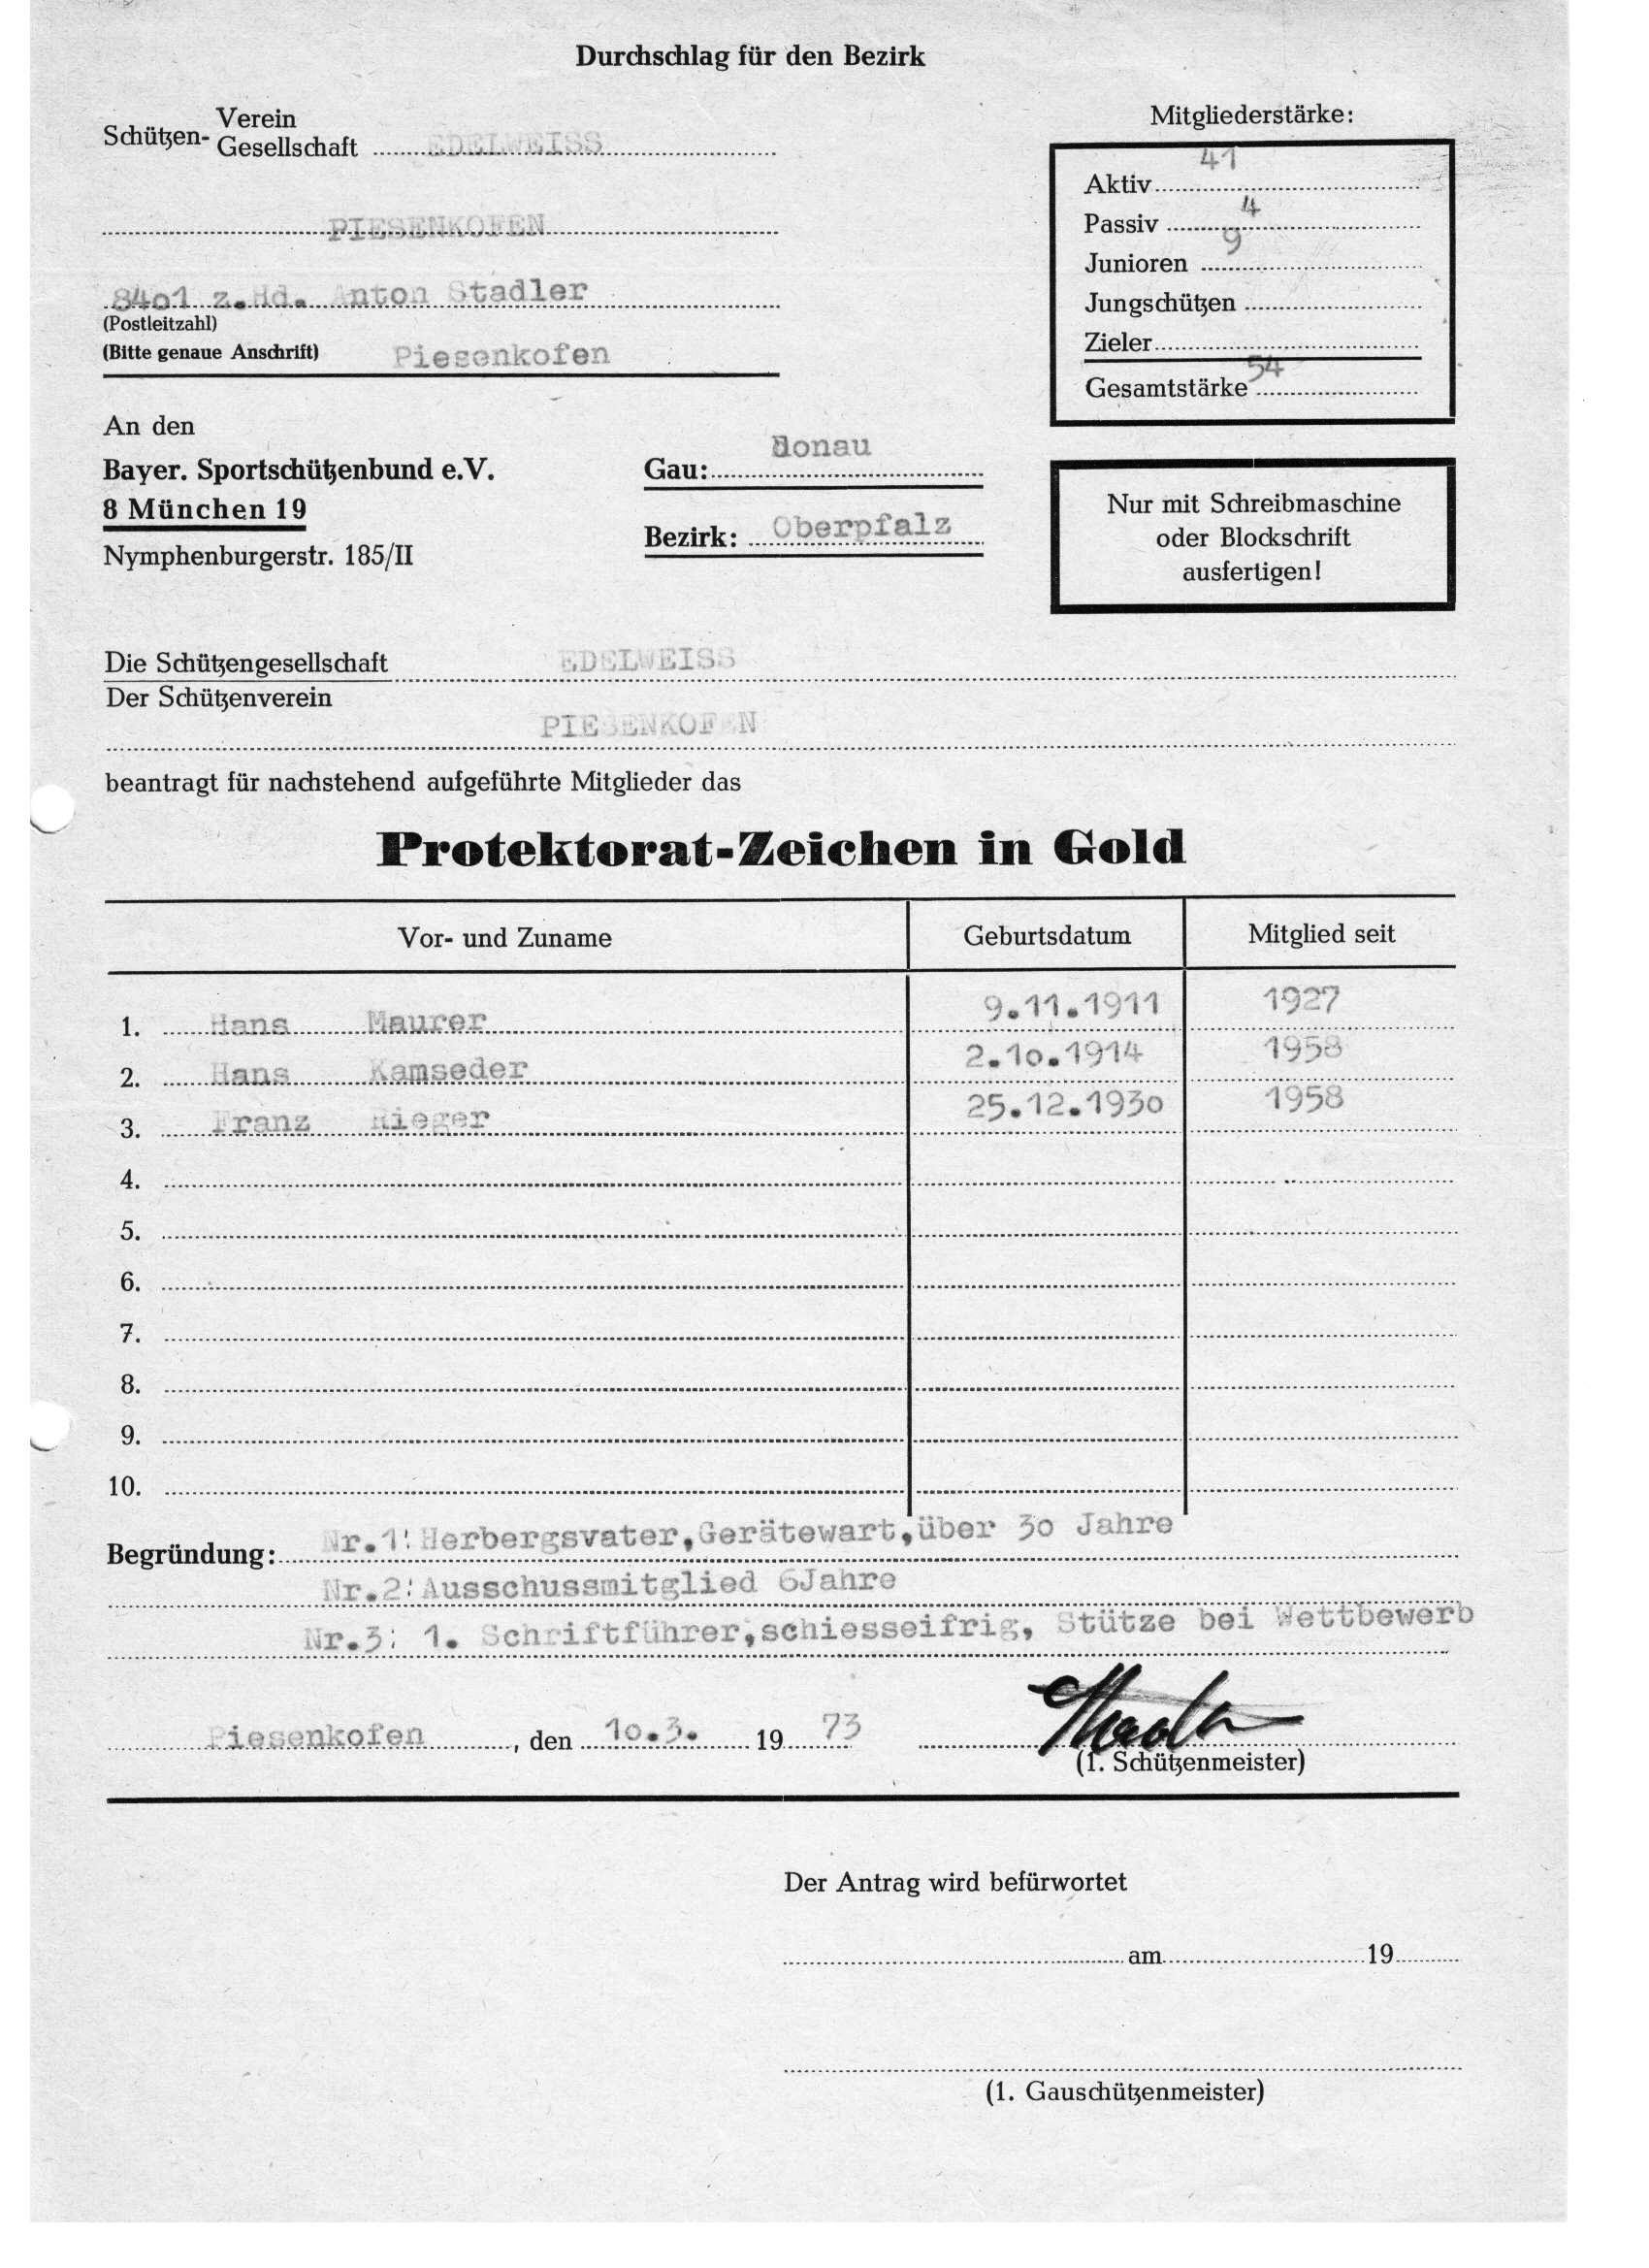 1973 Protektoratzeichen in Gold